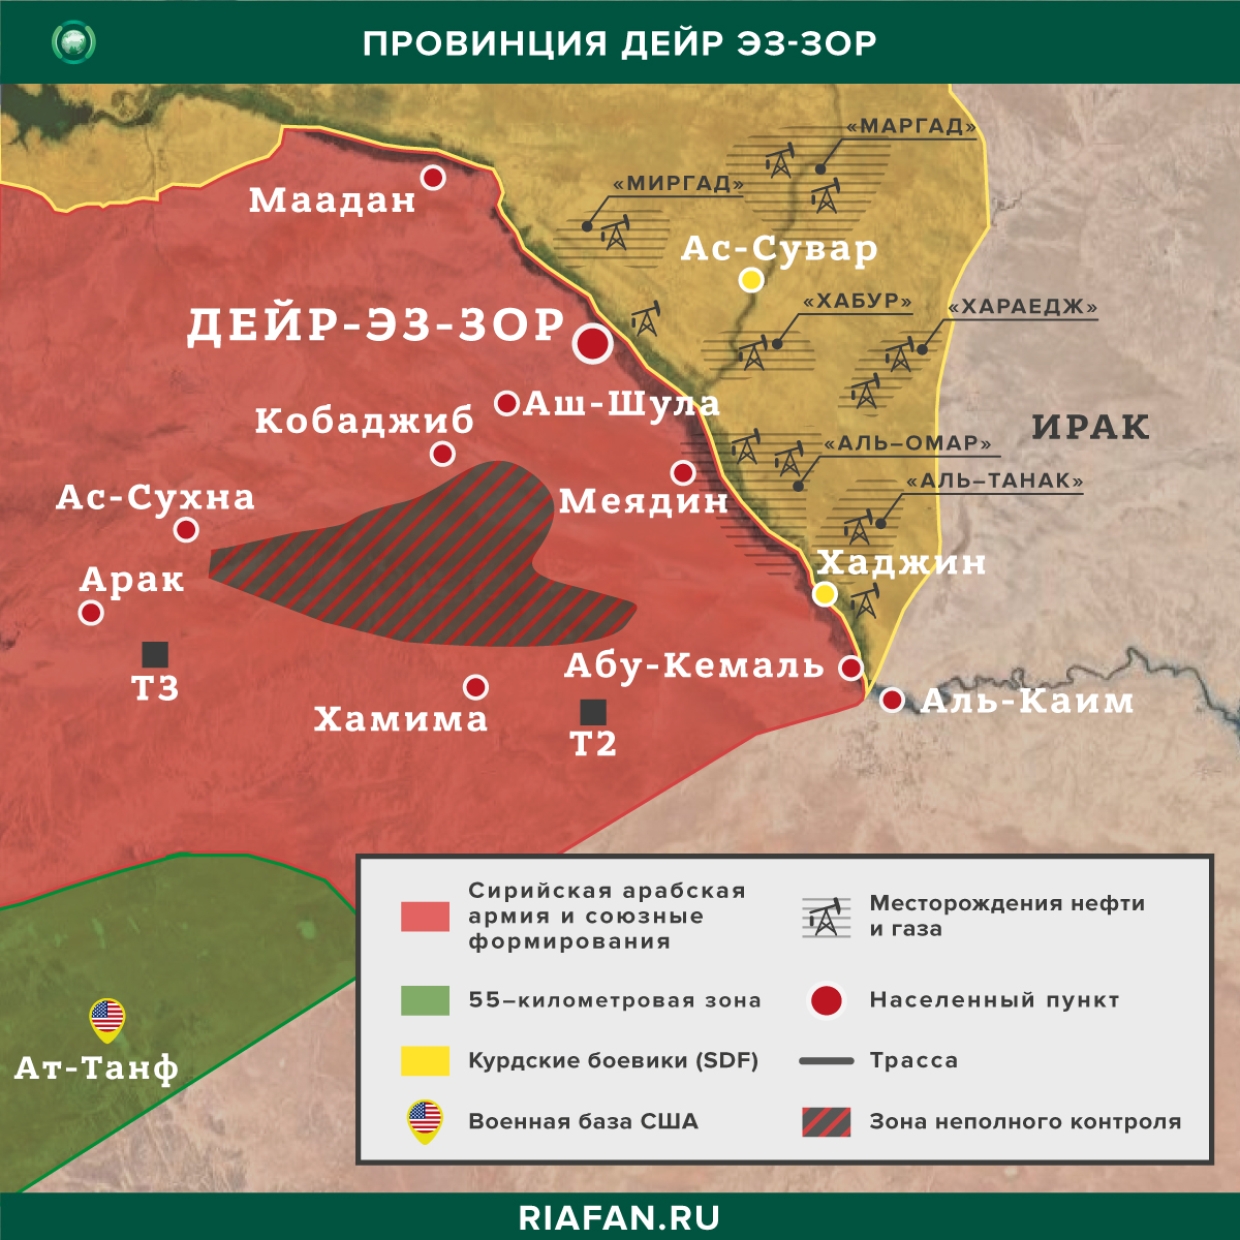 叙利亚新闻 10 九月 22.30: боевики SDF насмерть запытали жителя Дейр-эз-Зора